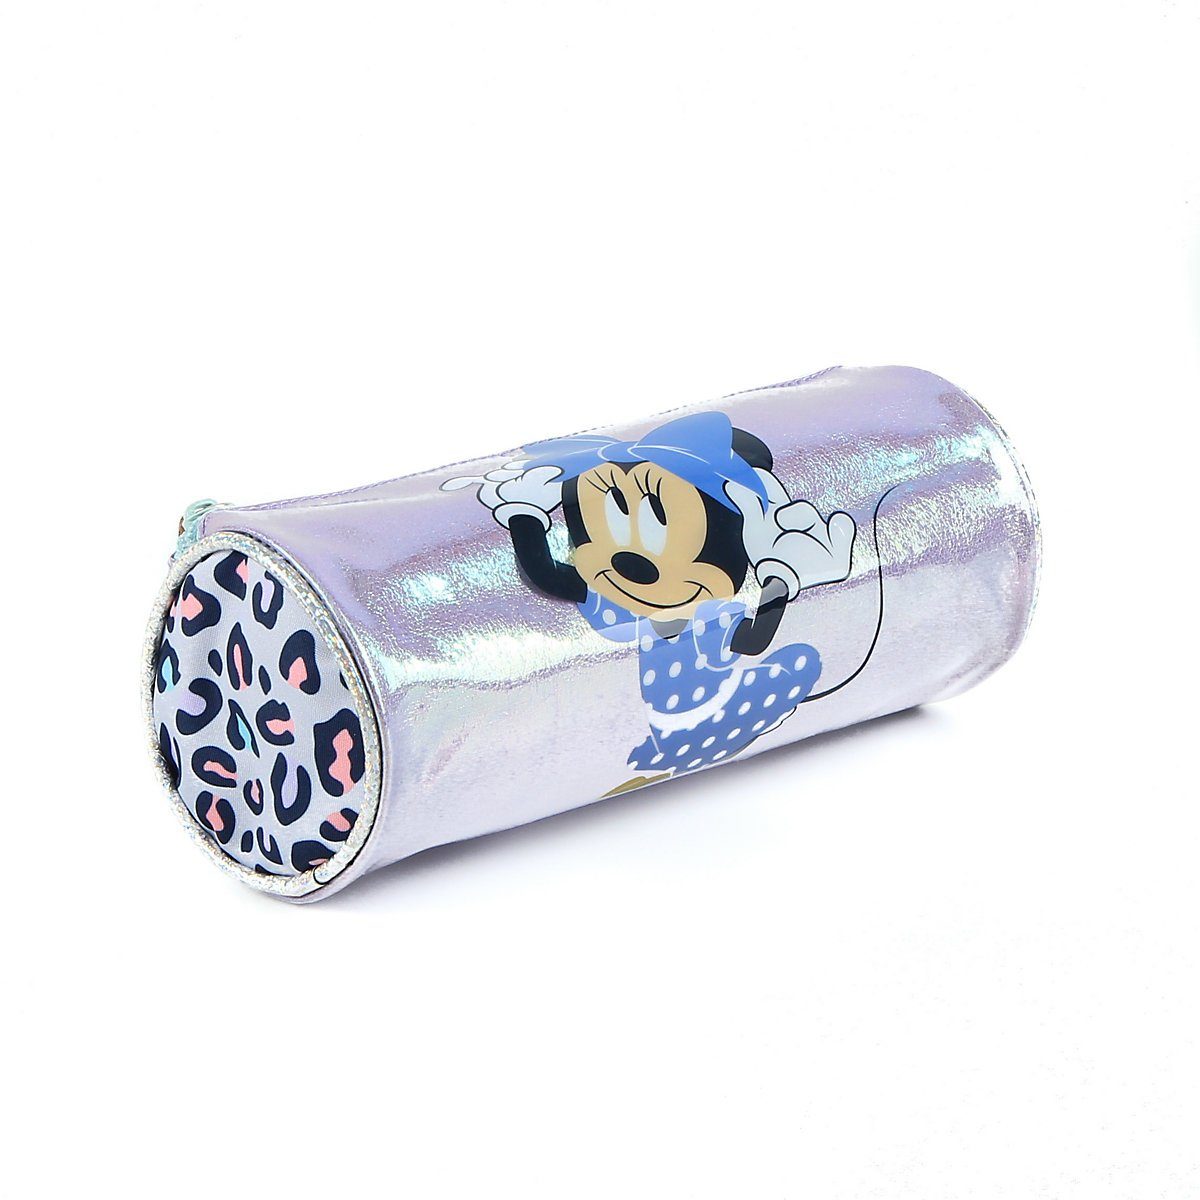 Spielzeug Federmäppchen Disney Minnie Mouse Schreibgeräteetui Schlampermäppchen Minnie Mouse Glamour